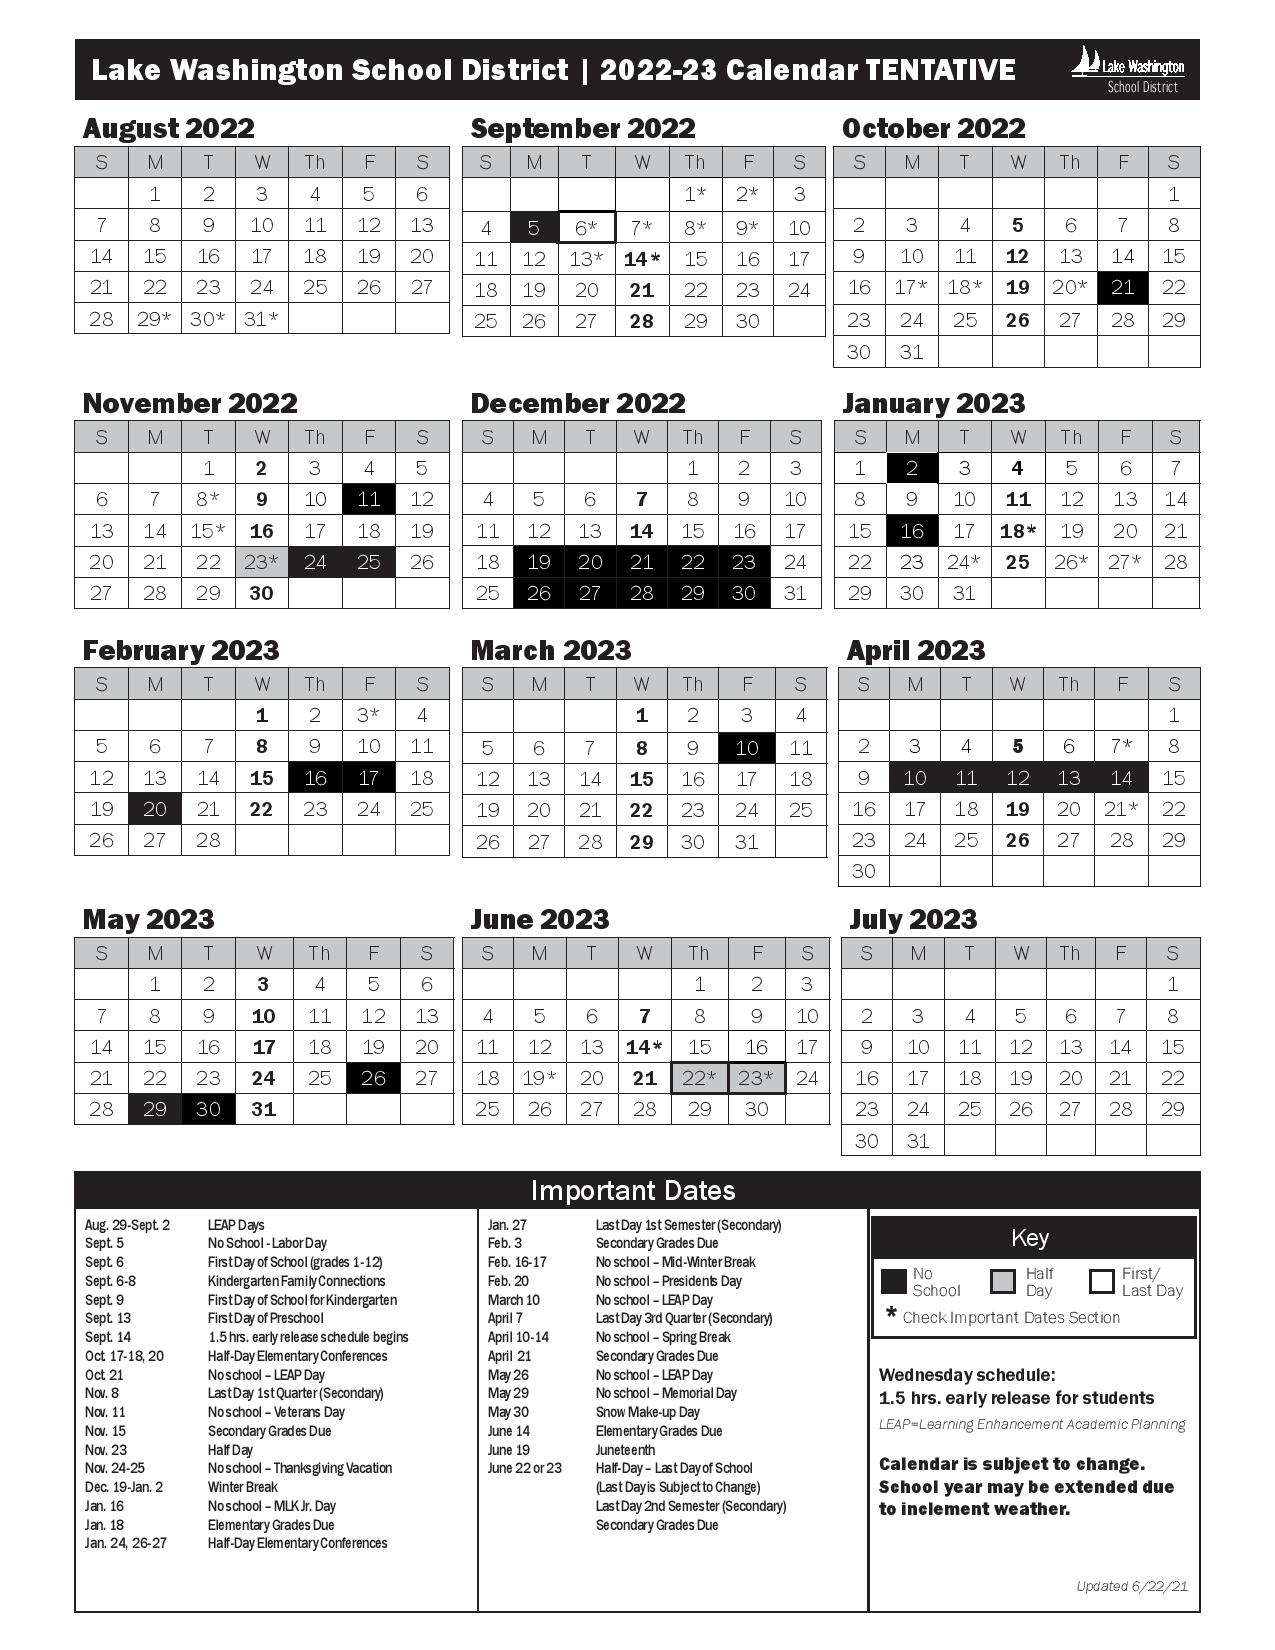 Lake Washington School District Calendar 2022-2023